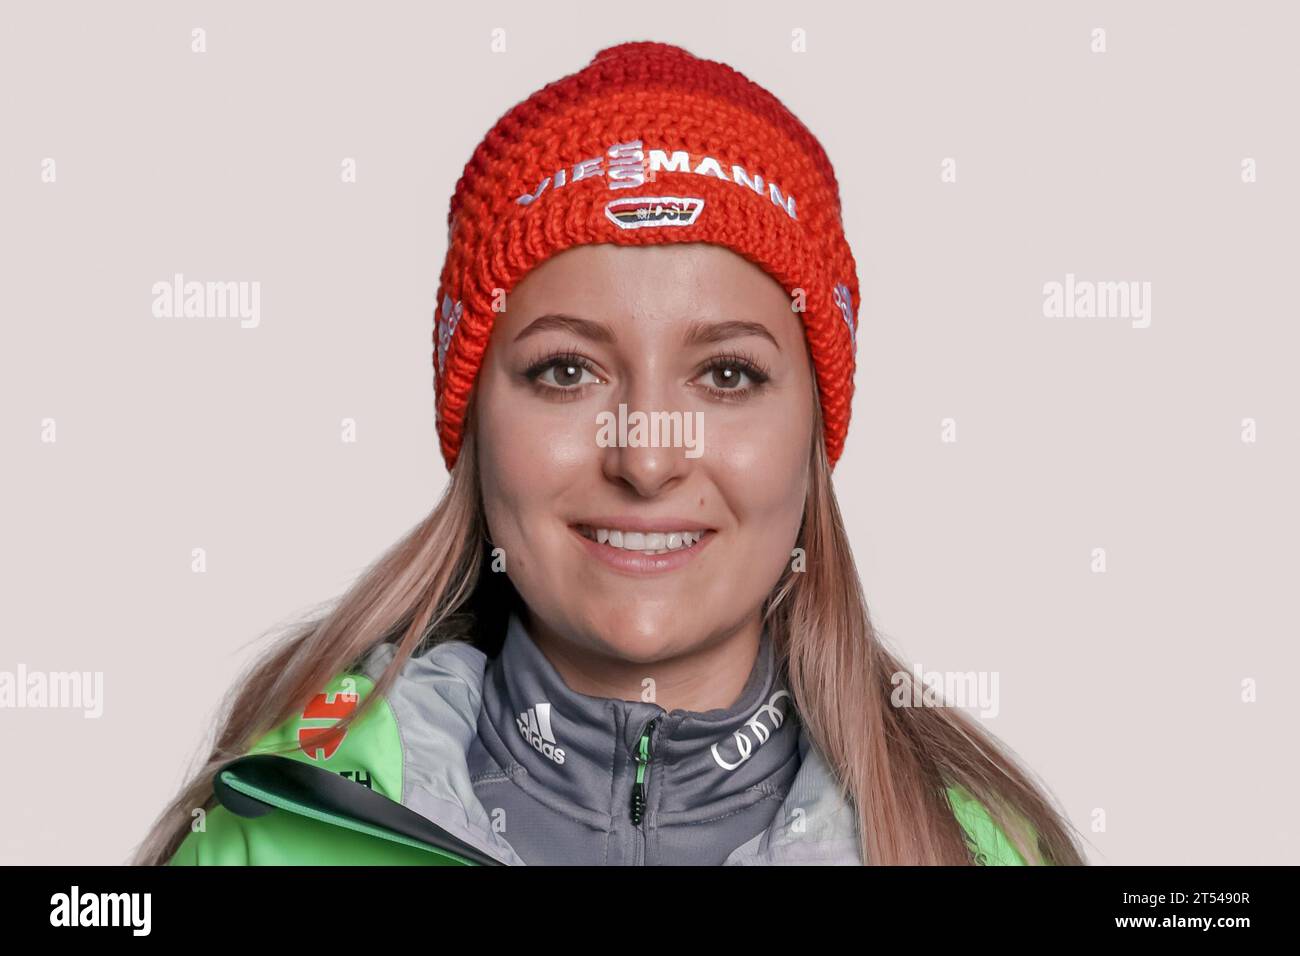 Kummer, Luise Portrait Deutscher Ski Verband - Fototermin in Ingolstadt, Deutschland am 22.10.2016 Stock Photo